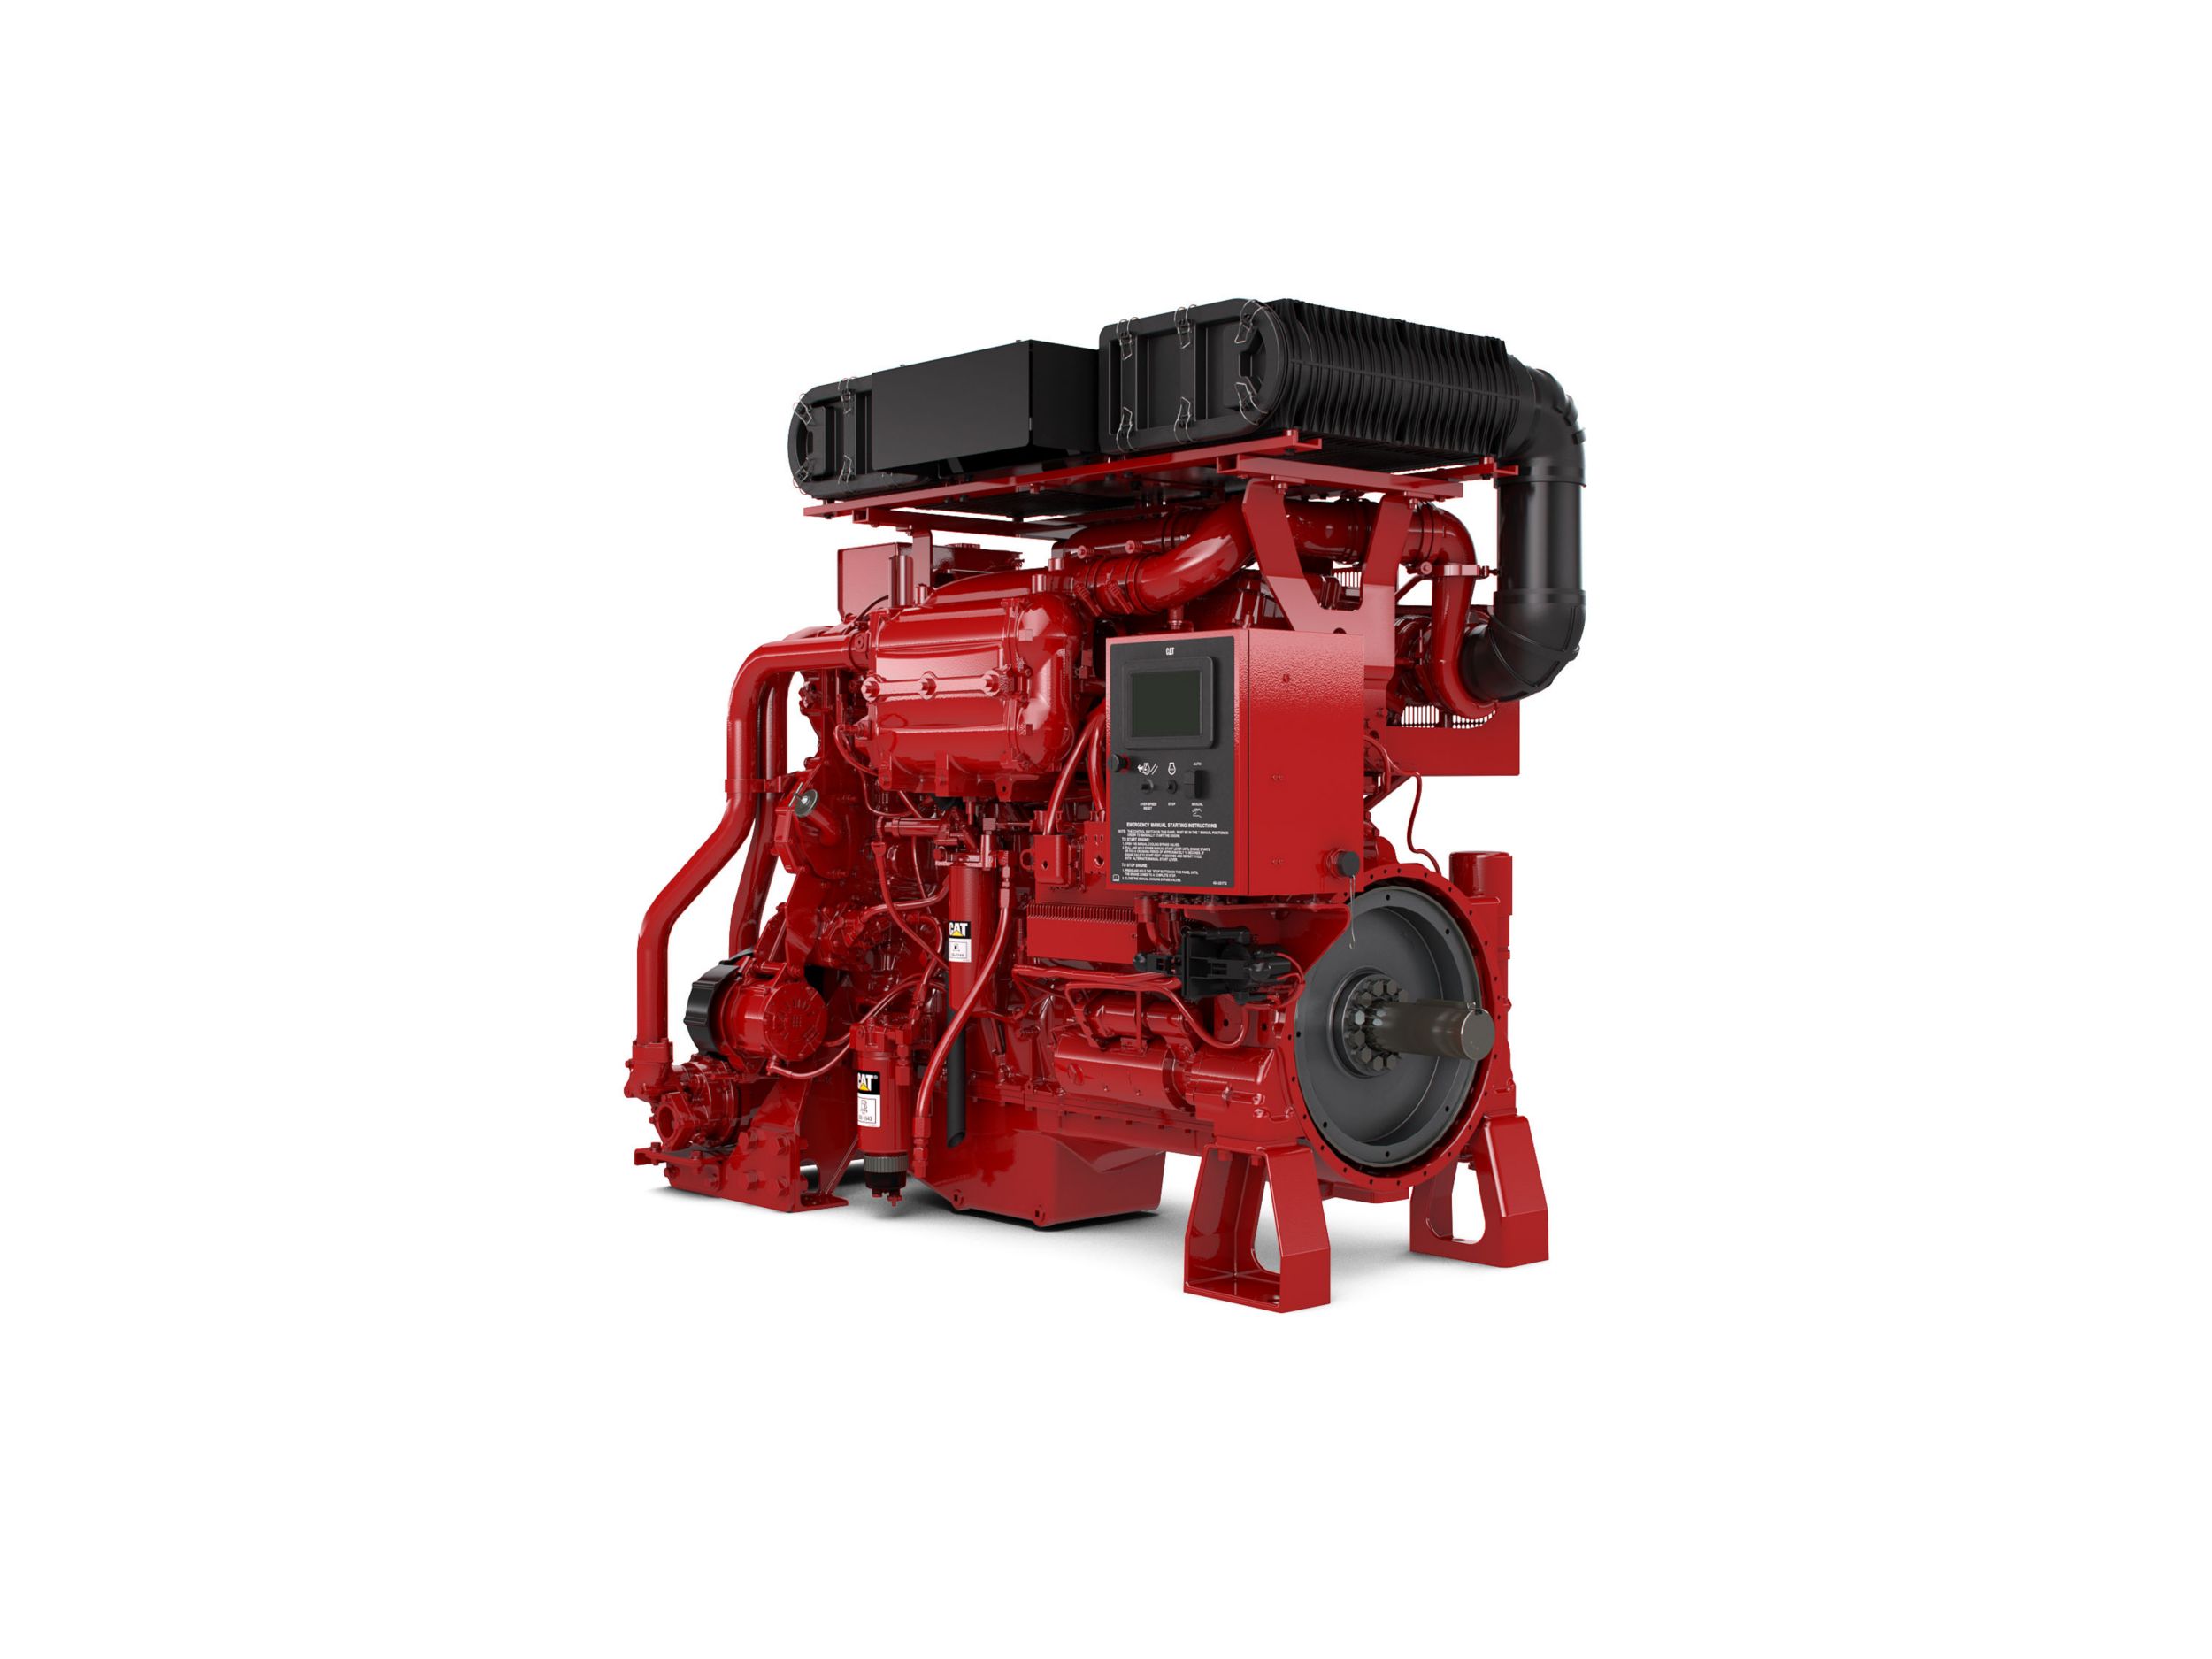 Motore diesel C18 per pompe antincendio -Aree non regolamentate o con regolamentazione minima